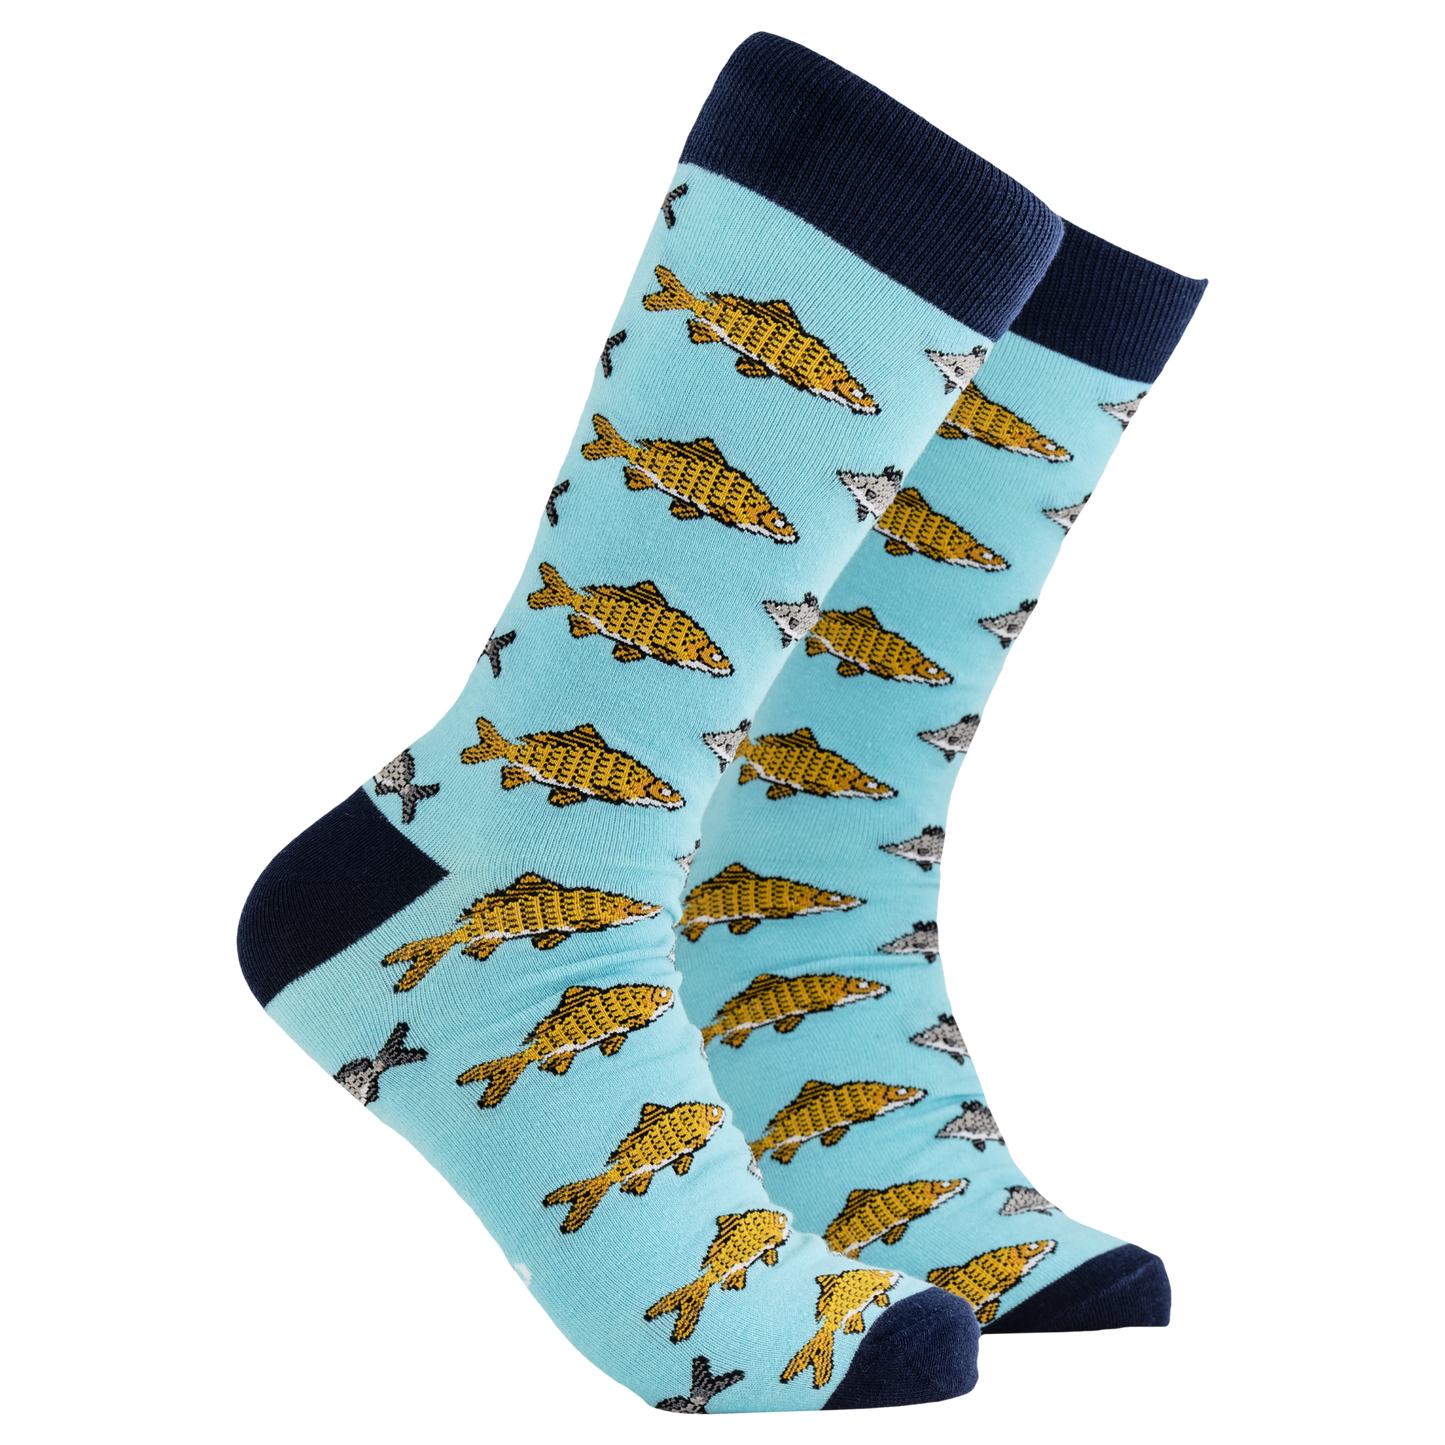 Carp Fishing Socks - Carpe Diem. A pair of socks depicting Koi carp fish. Blue legs, dark blue cuff, heel and toe.